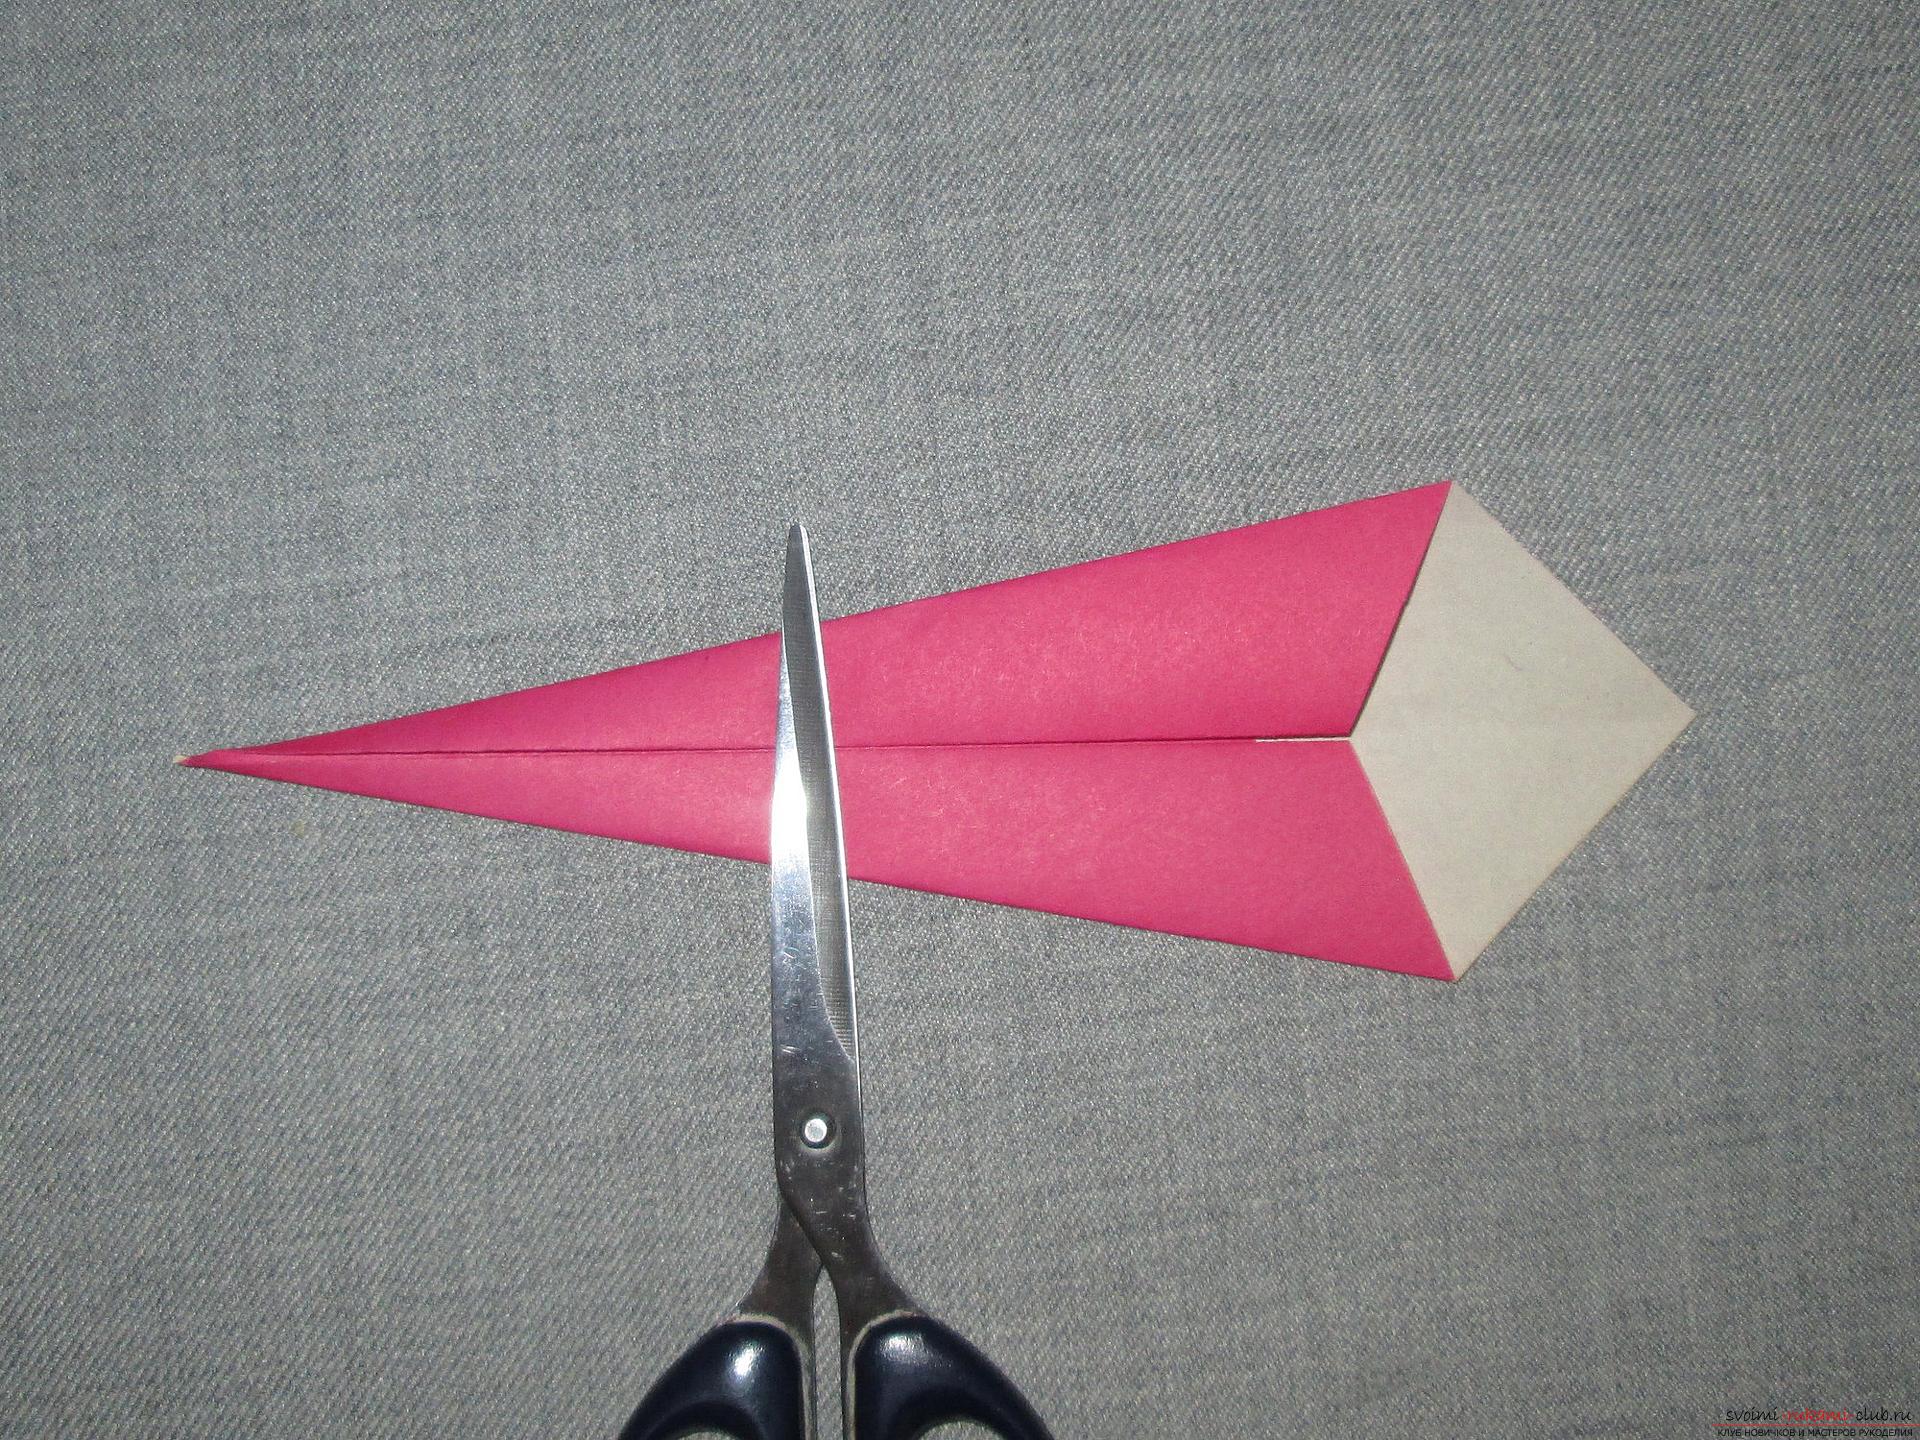 هذا اوريغامي فئة رئيسية مفصلة للأطفال من 8 سنوات سوف يعلم كيفية جعل ثعبان اوريغامي مصنوعة من الورق .. صورة # 5